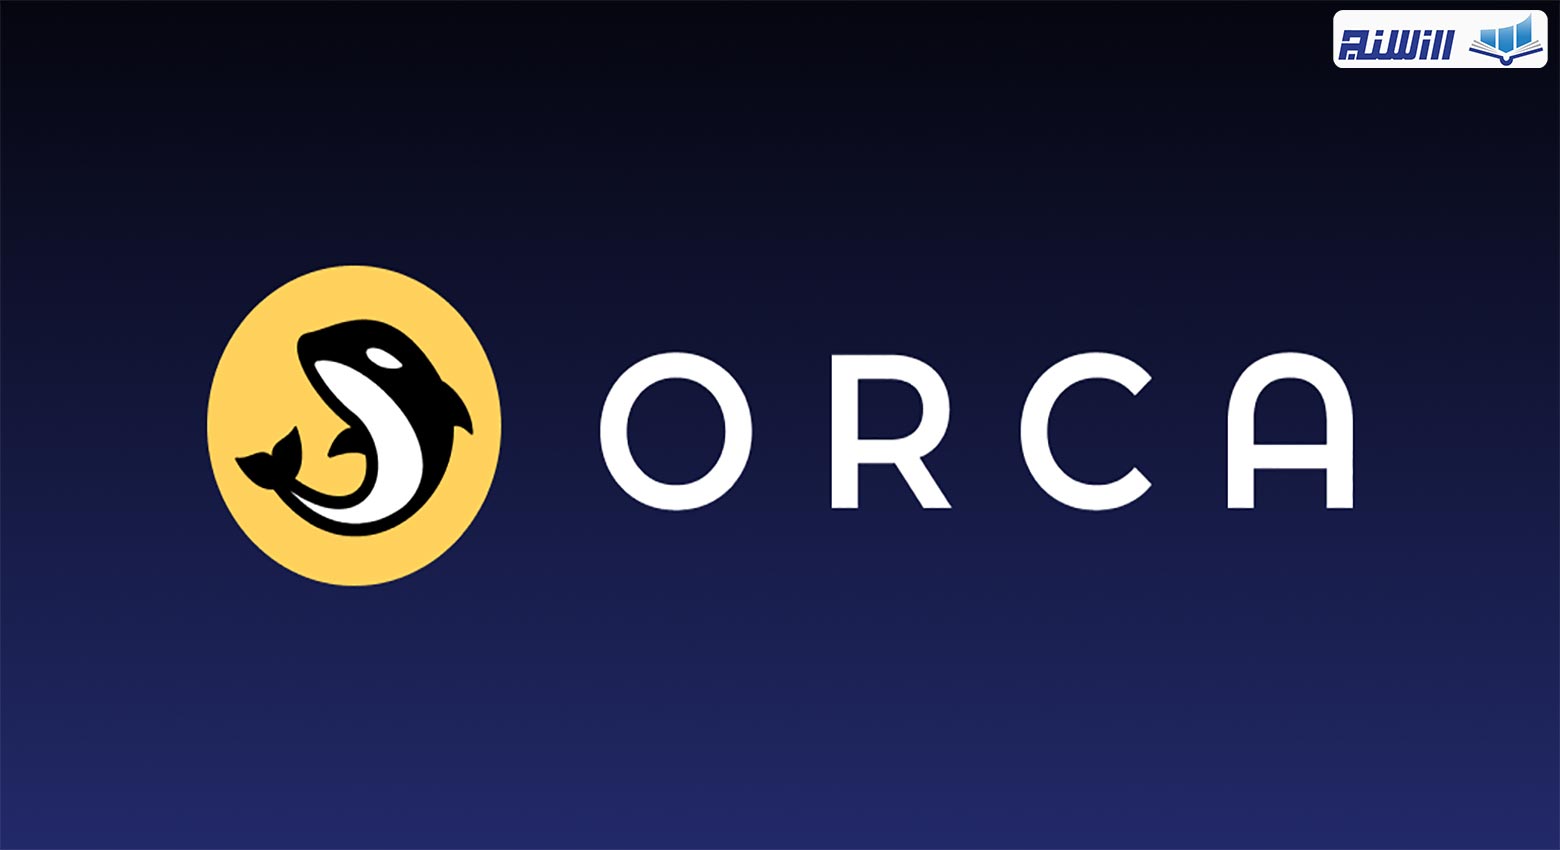 ویژگی های پلتفرم Orca چیست؟